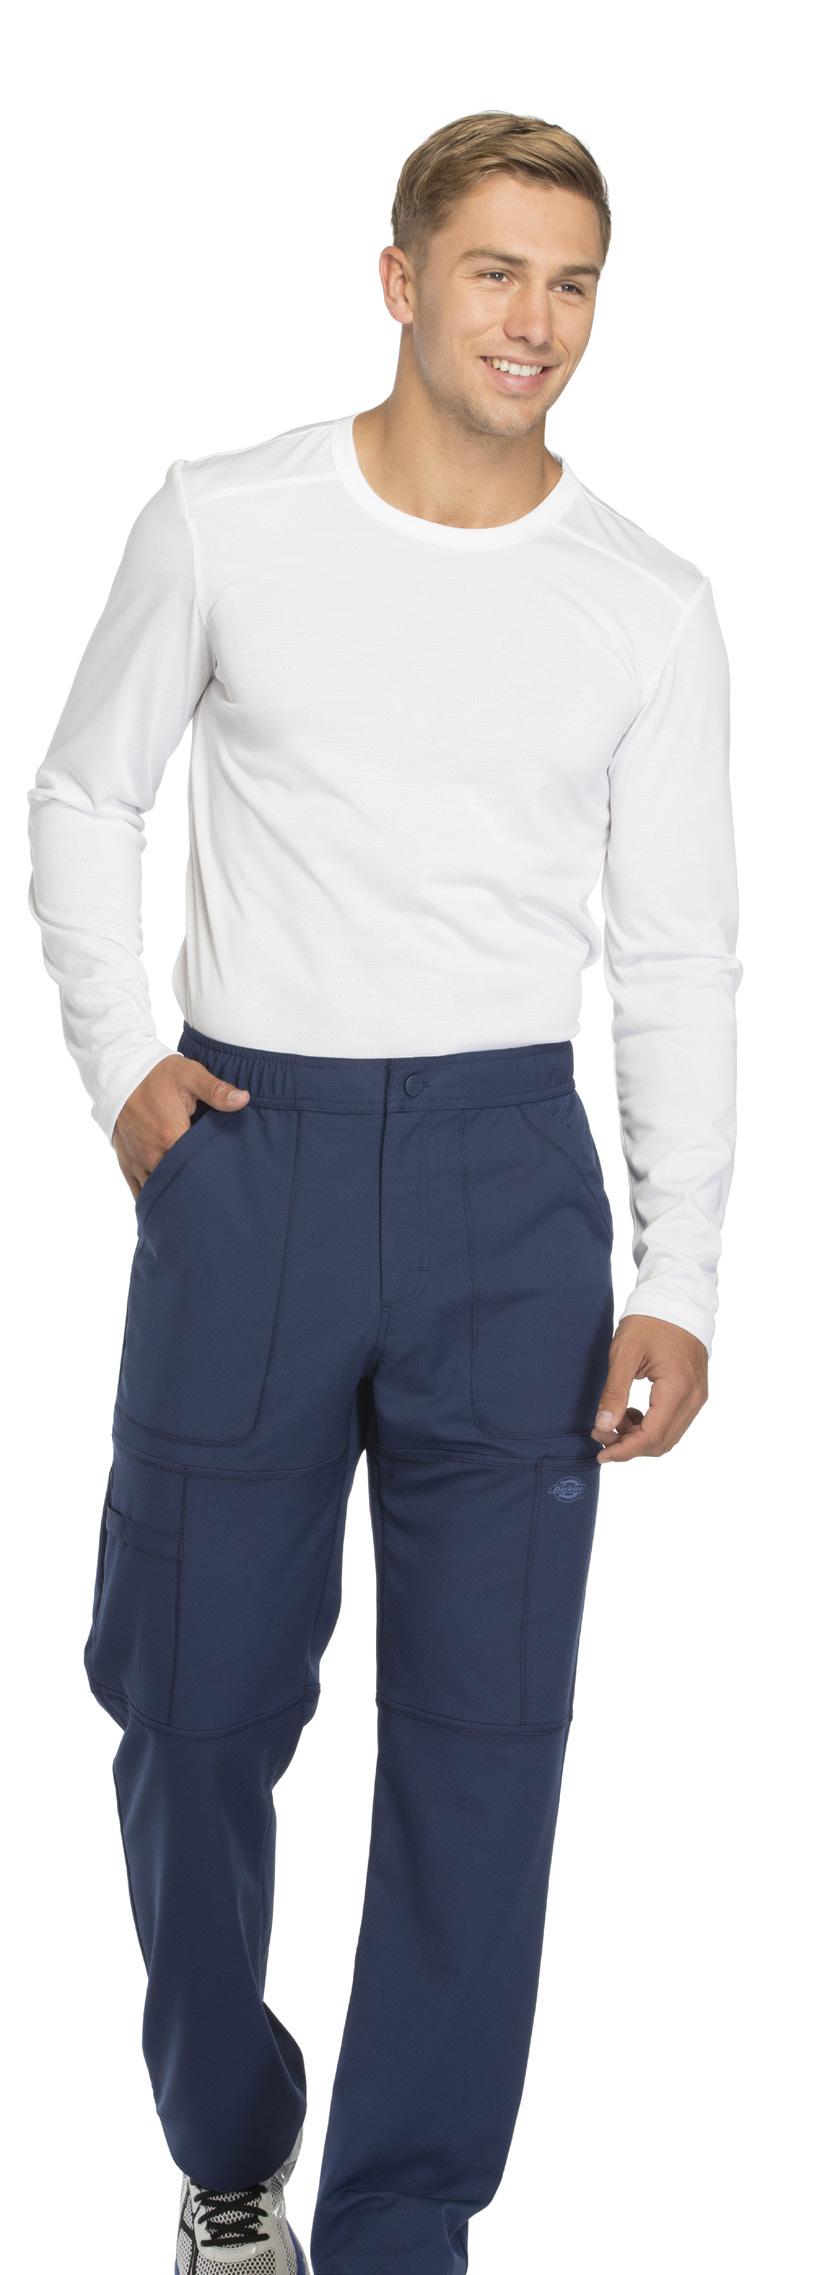 Mesh-elastic waistband with drawstring Bolsillos laterales Front slash pockets